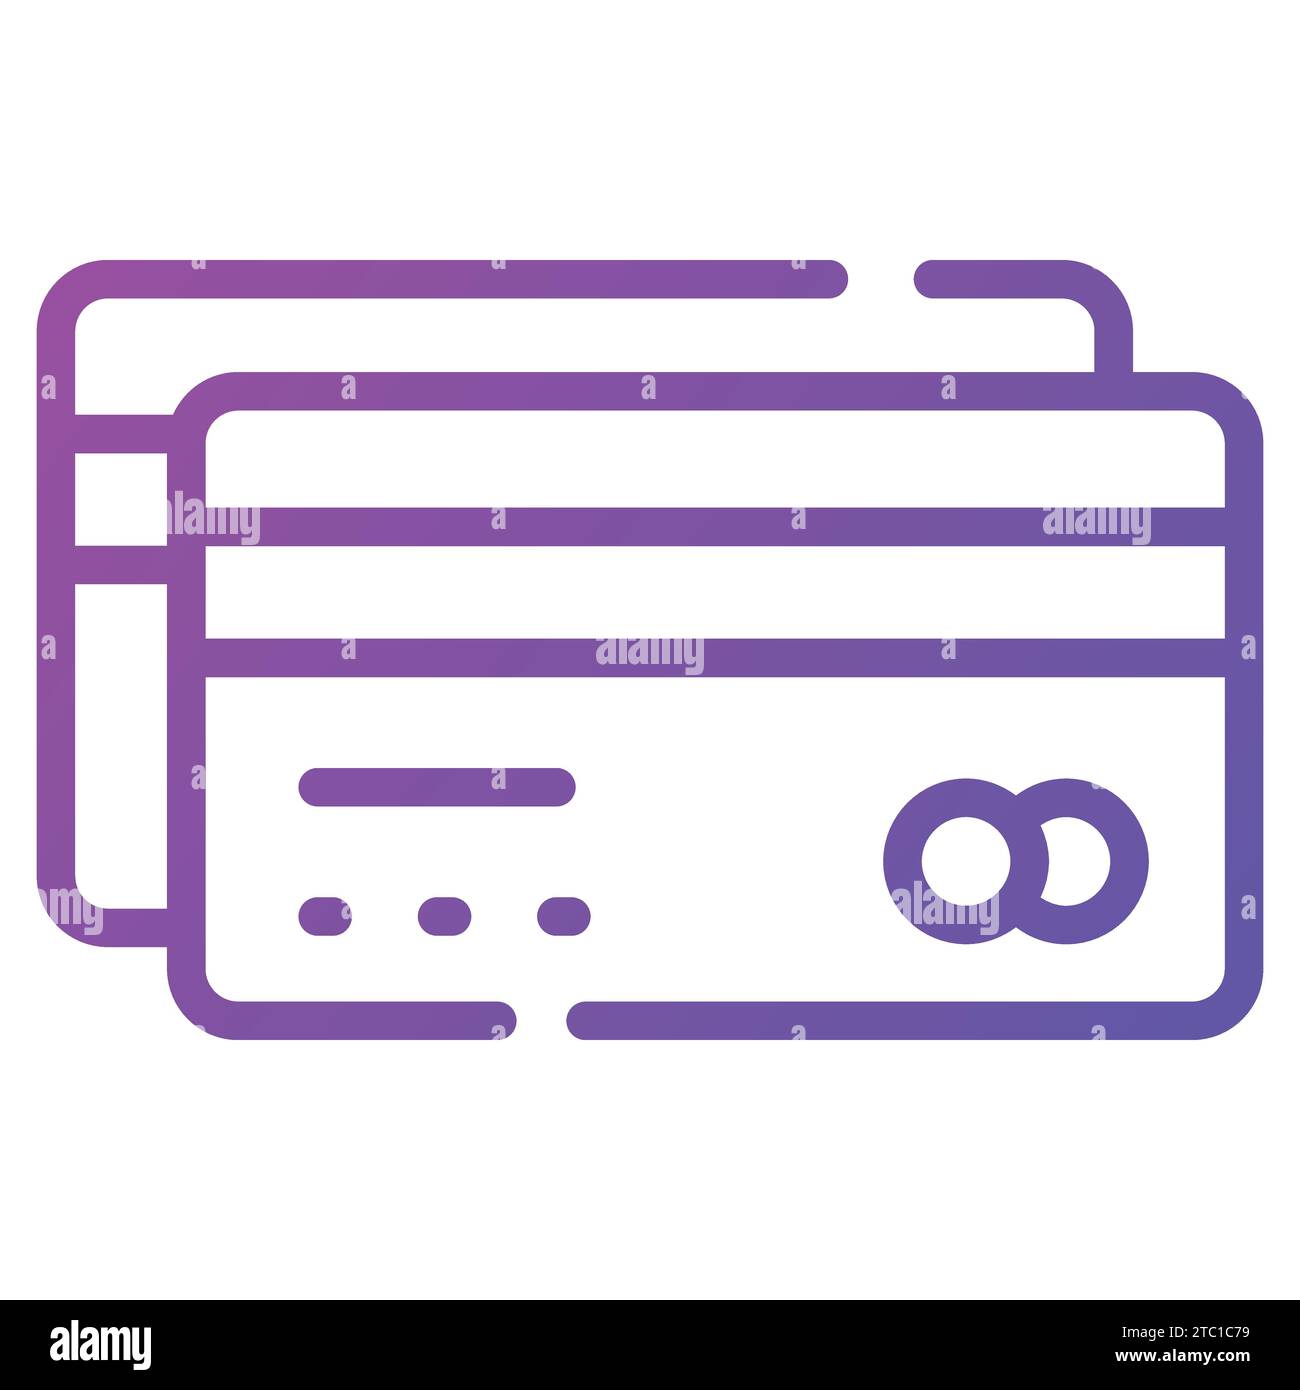 Carta bancomat con design vettoriale in stile moderno, carta per pagamenti online e prelievo di contanti. Illustrazione Vettoriale